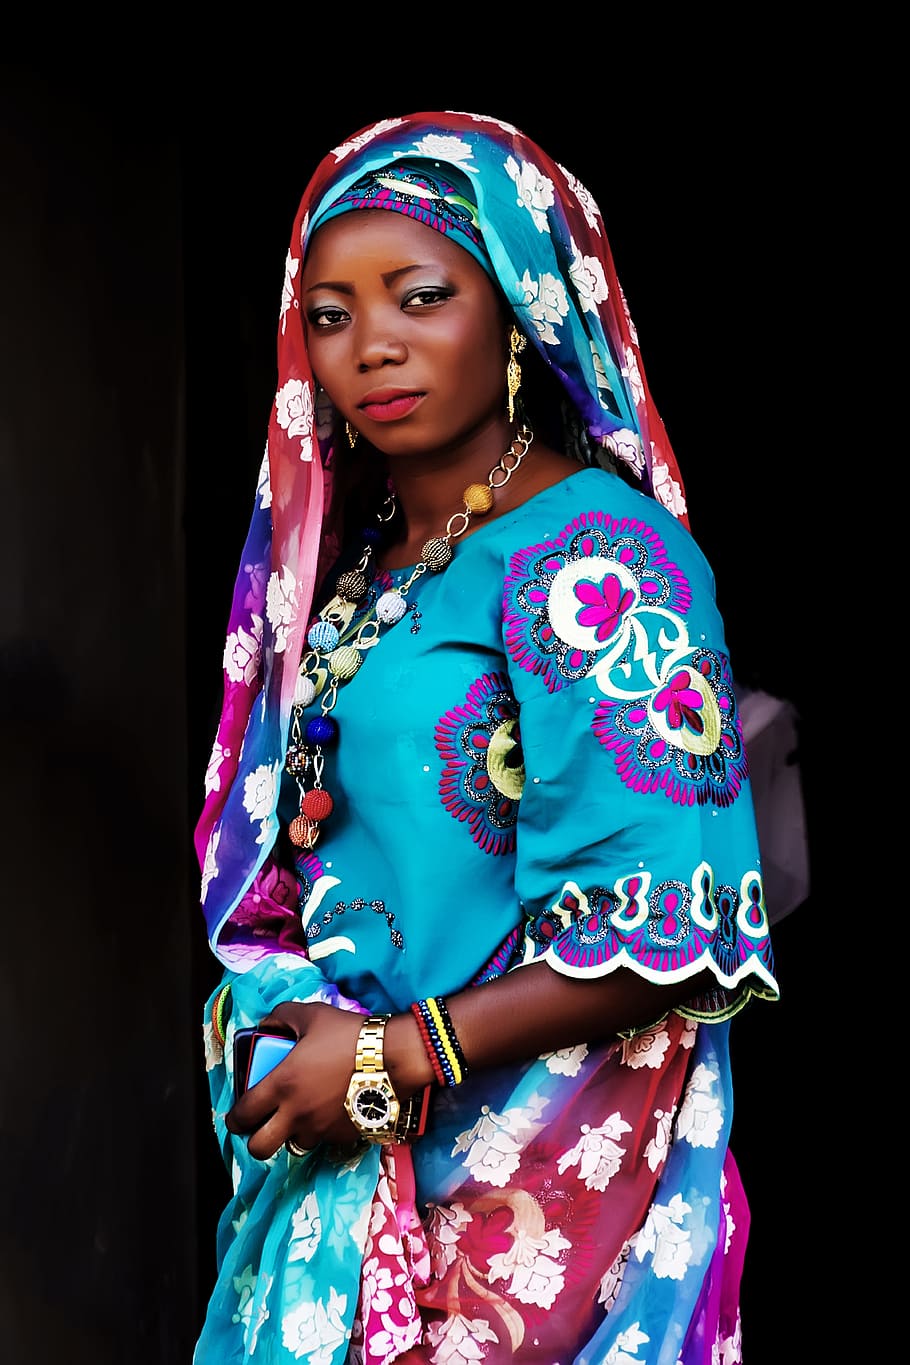 青, 紫, 花, ドレス, アフリカの女性, 女性, ナイジェリアの女性, 黒, 黒人女性, 美しい黒人女性